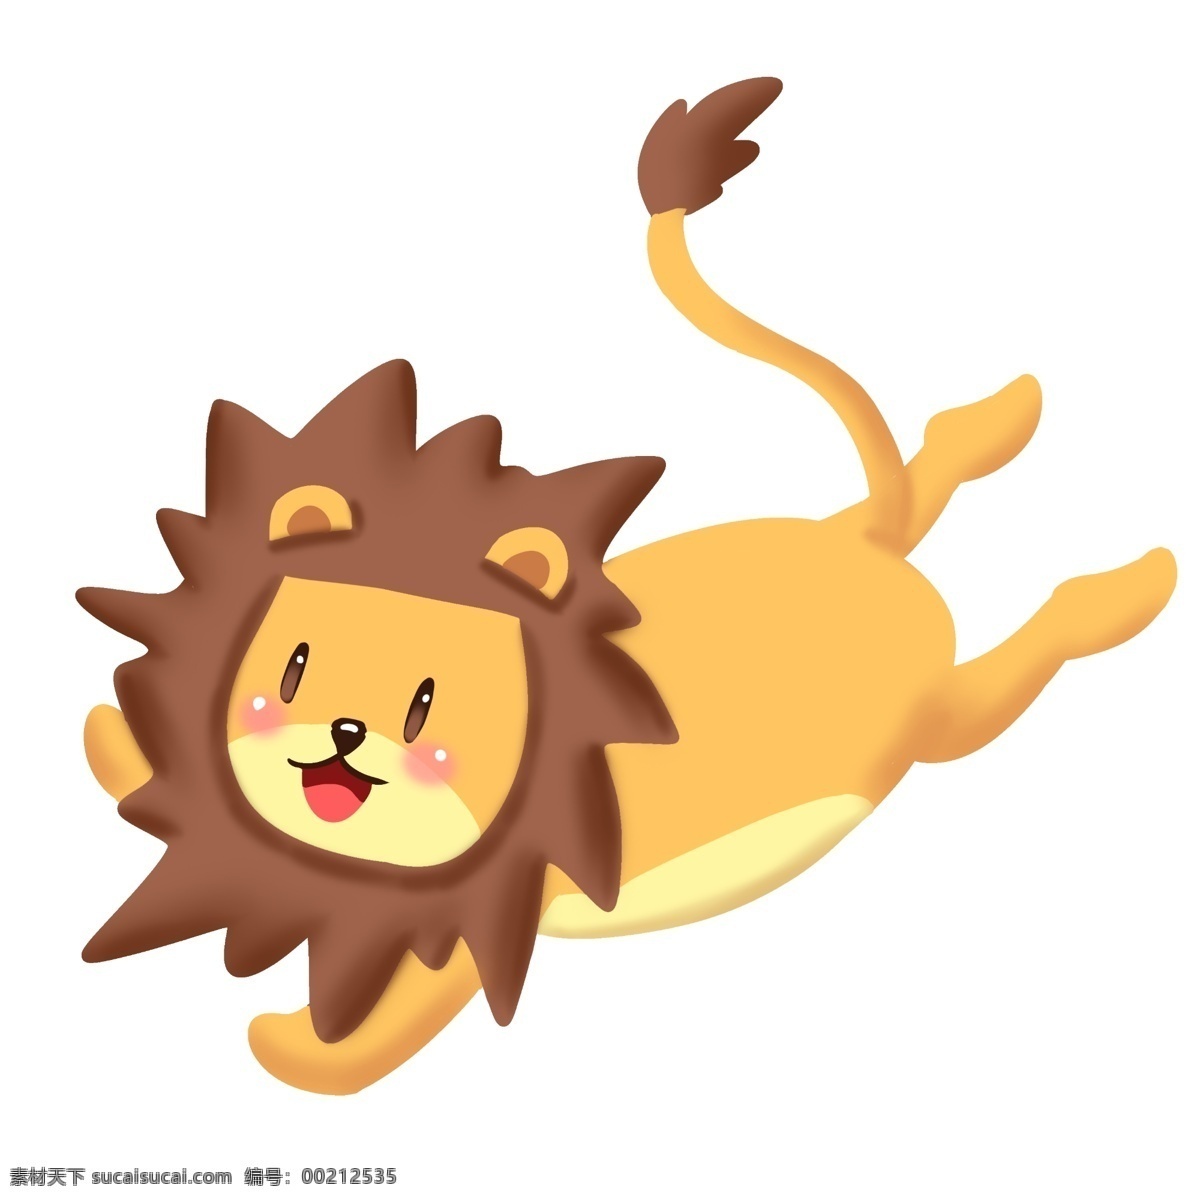 趴 卖 萌 小 狮子 插画 可爱的狮子 动物 翘尾巴 趴着的小狮子 卖萌的小狮子 开心狮子